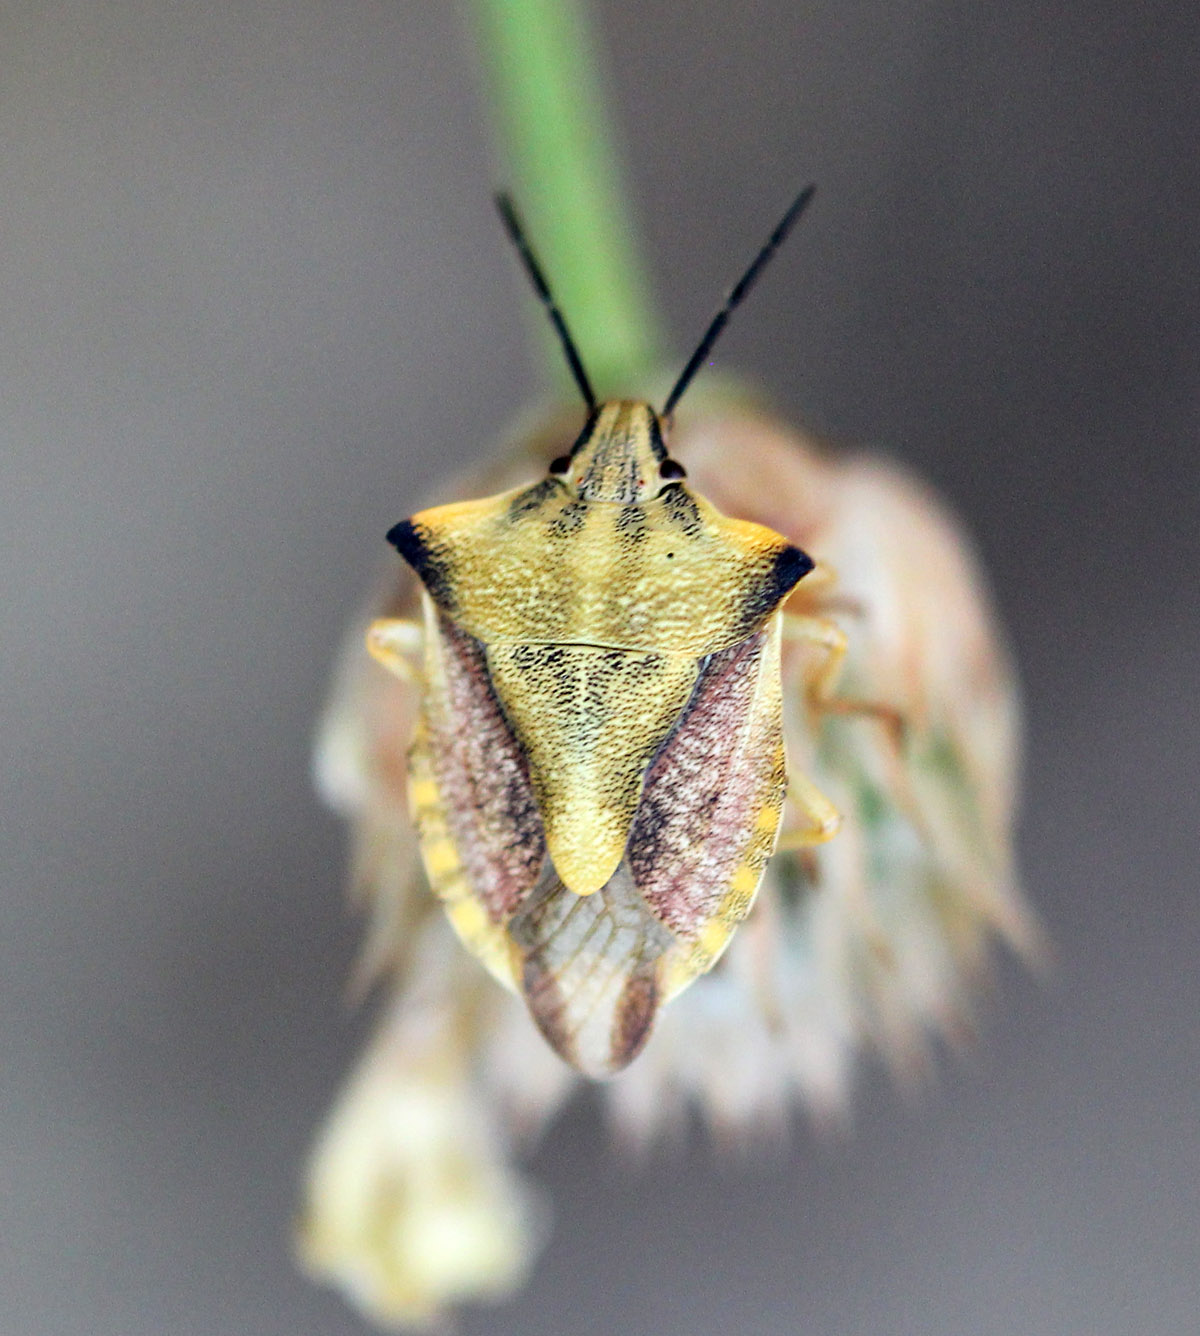 Carpocoris fuscispinus - Щитник остроплечий или щитник черношипный